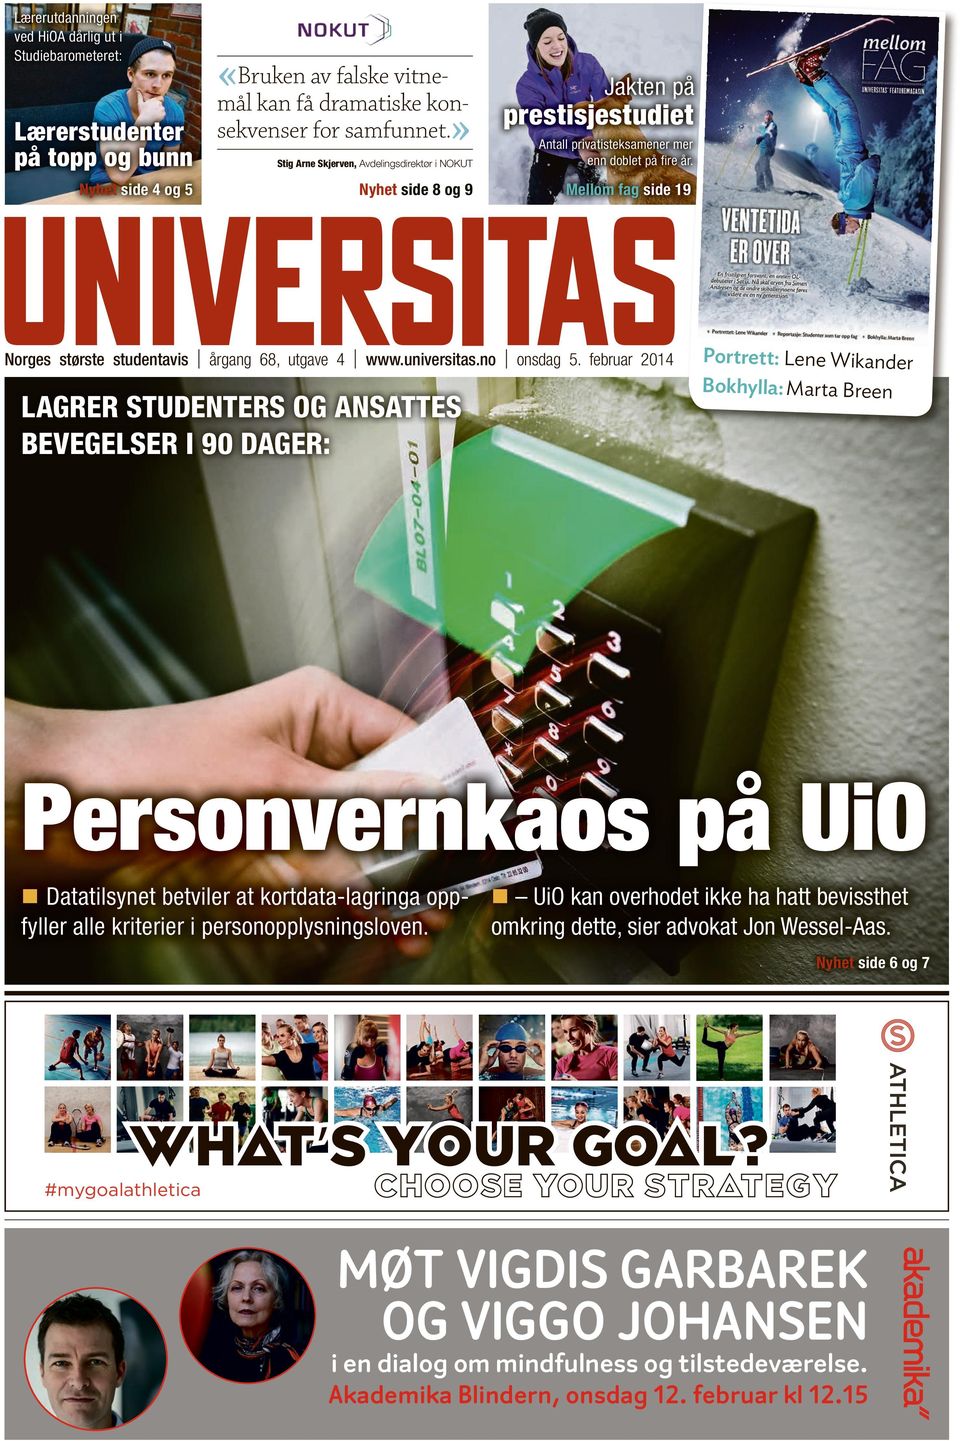 Nyhet side 8 og 9 Mellom fag side 19 Norges største studentavis årgang 68, utgave 4 www.universitas.no onsdag 5.